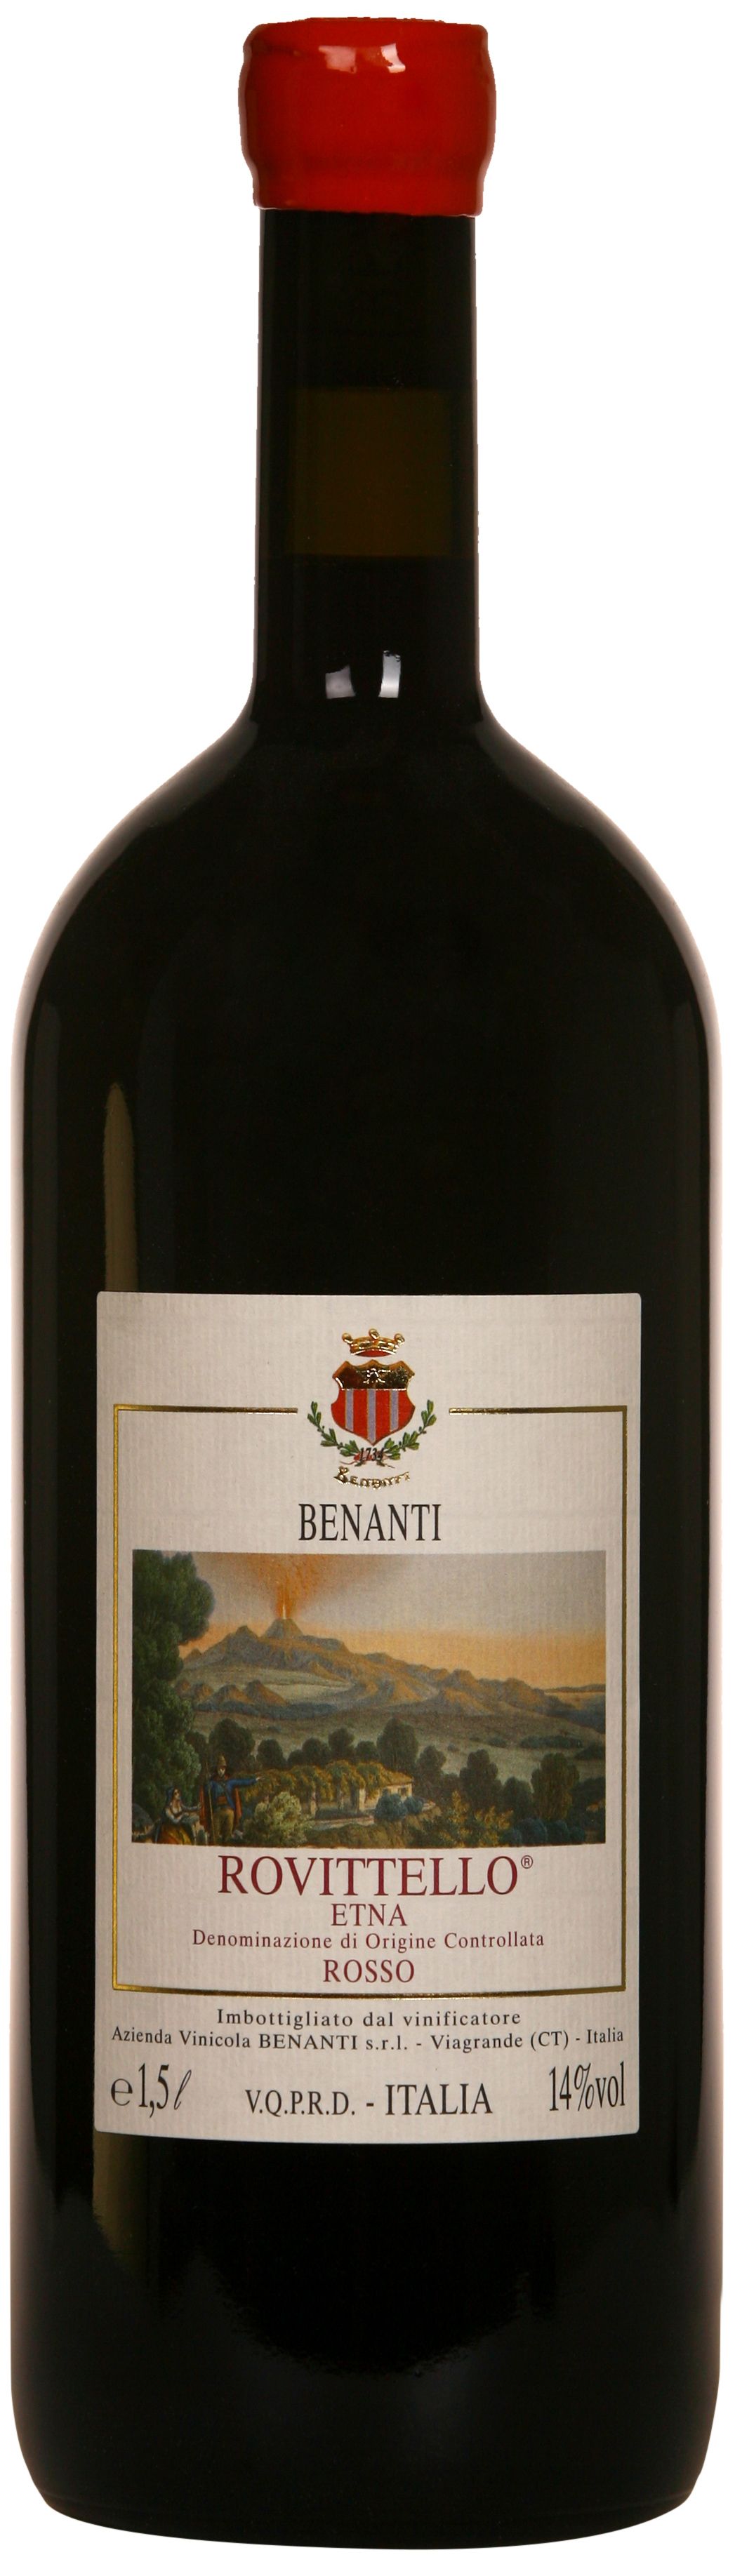 Benanti, Rovitello Etna Rosso, 1997